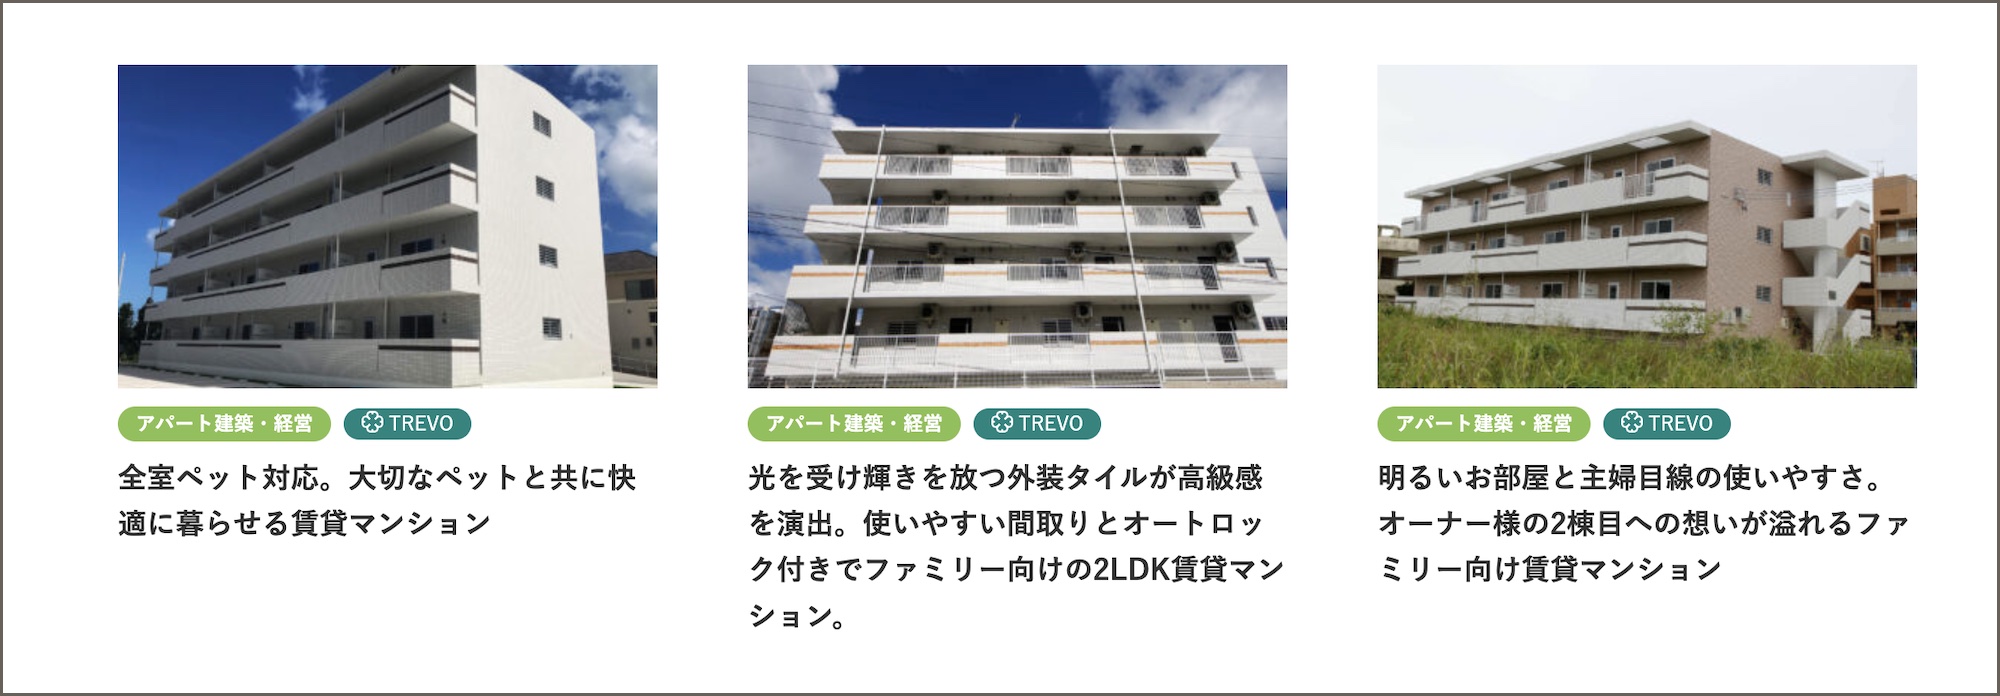 大鏡建設の規格型賃貸マンション・アパート『TREVO（トレボ）』のWebページ公開